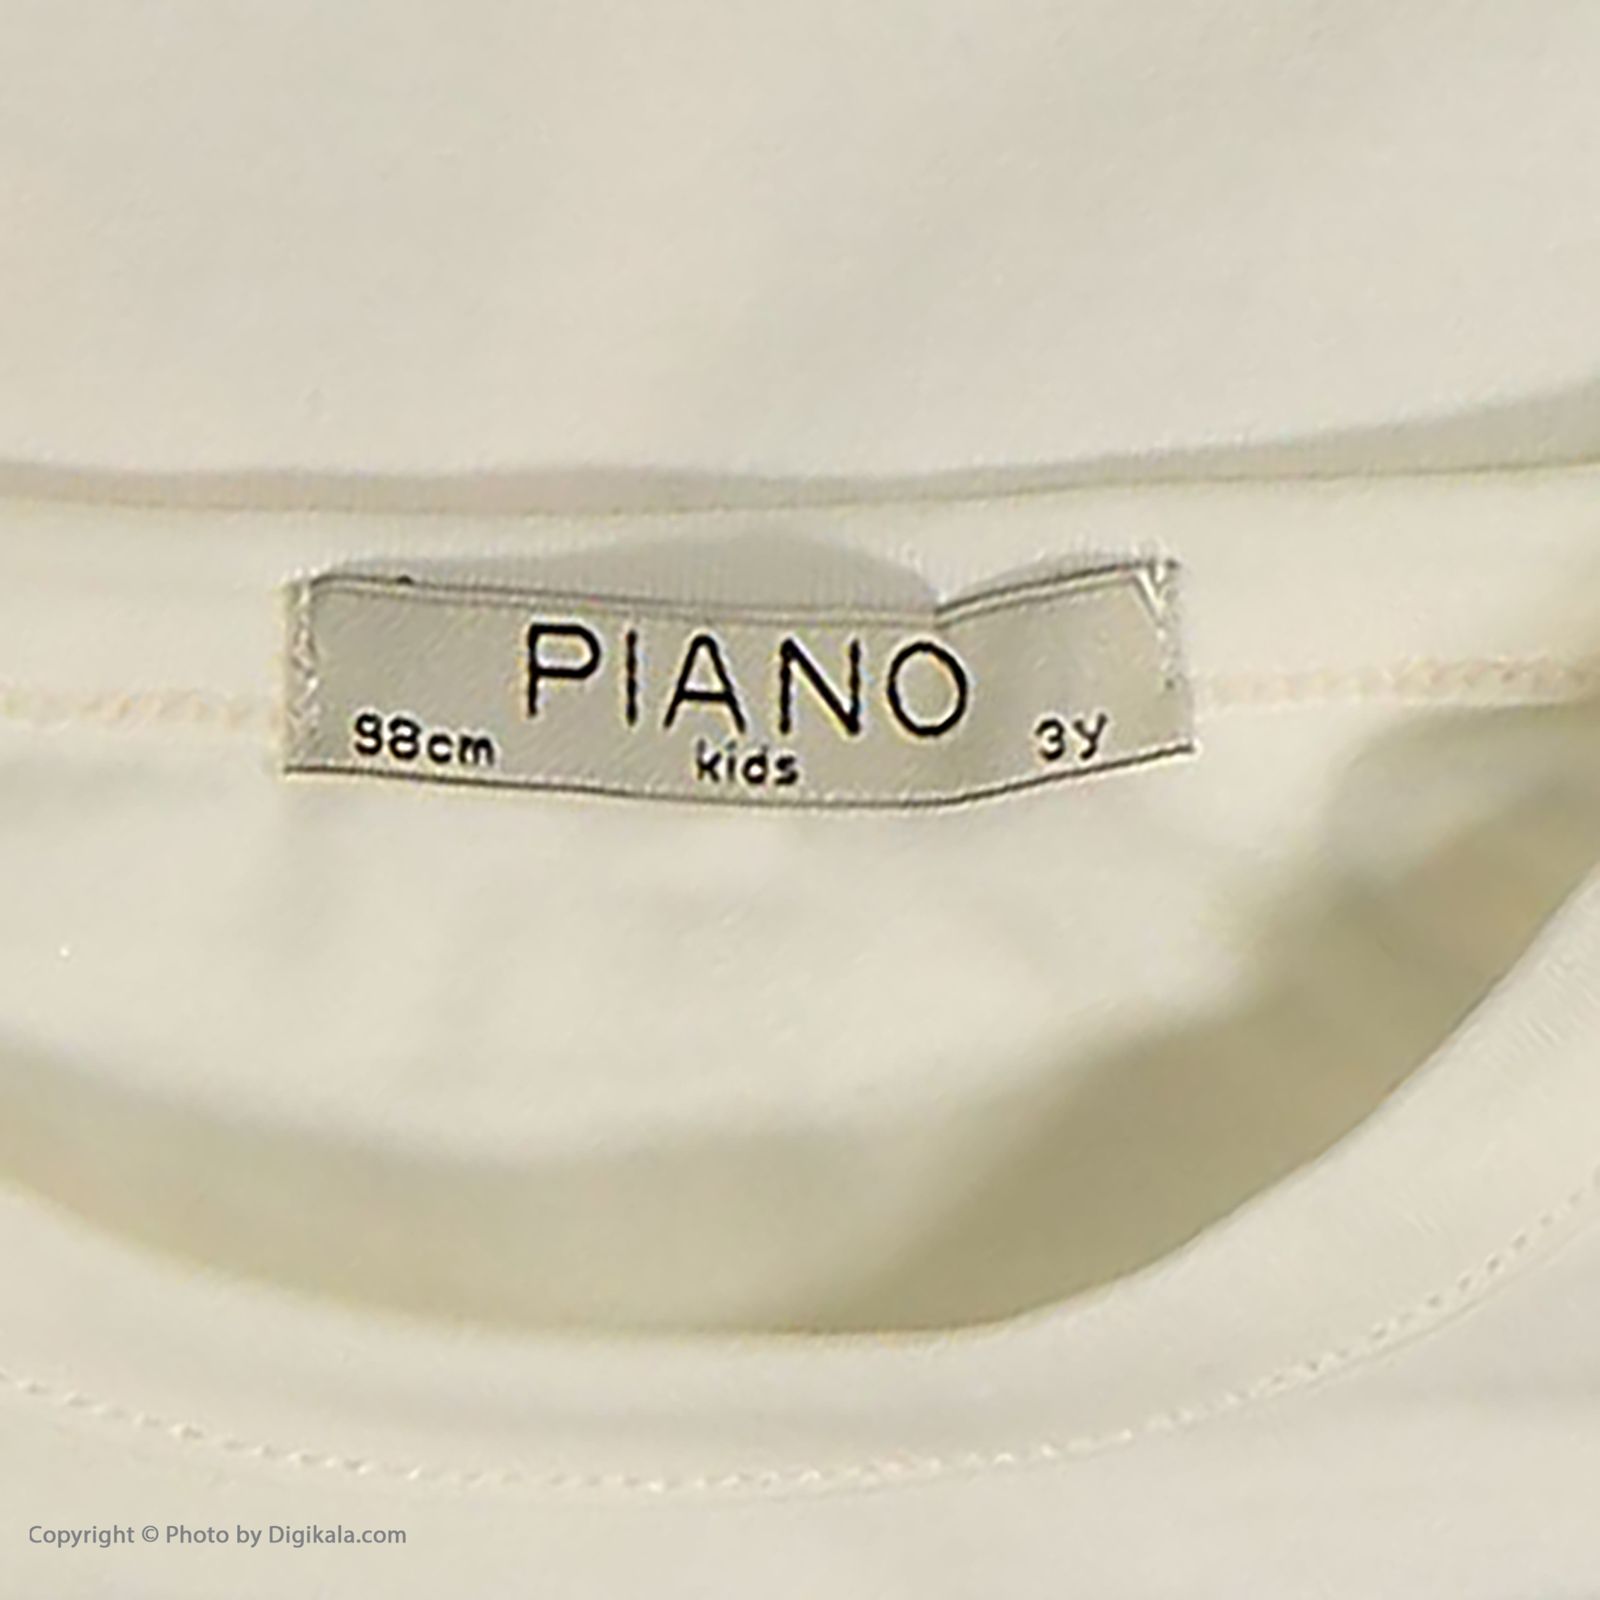 ست تی شرت و شلوار دخترانه پیانو مدل 1856-05 -  - 5